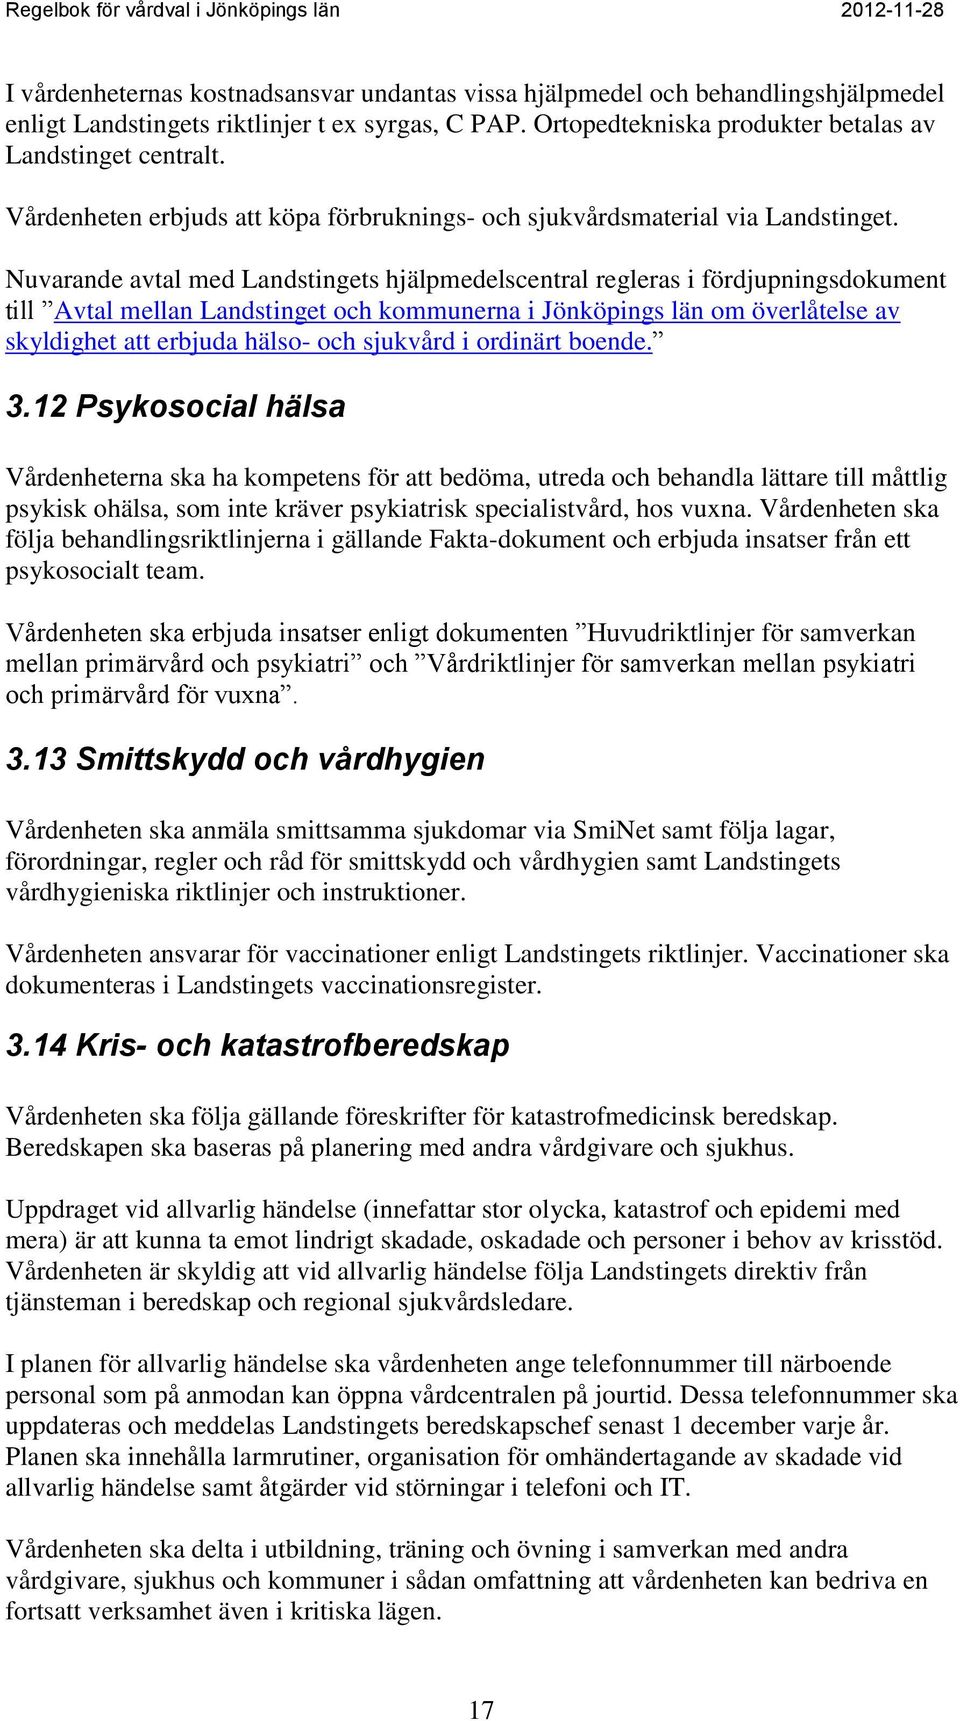 Nuvarande avtal med Landstingets hjälpmedelscentral regleras i fördjupningsdokument till Avtal mellan Landstinget och kommunerna i Jönköpings län om överlåtelse av skyldighet att erbjuda hälso- och